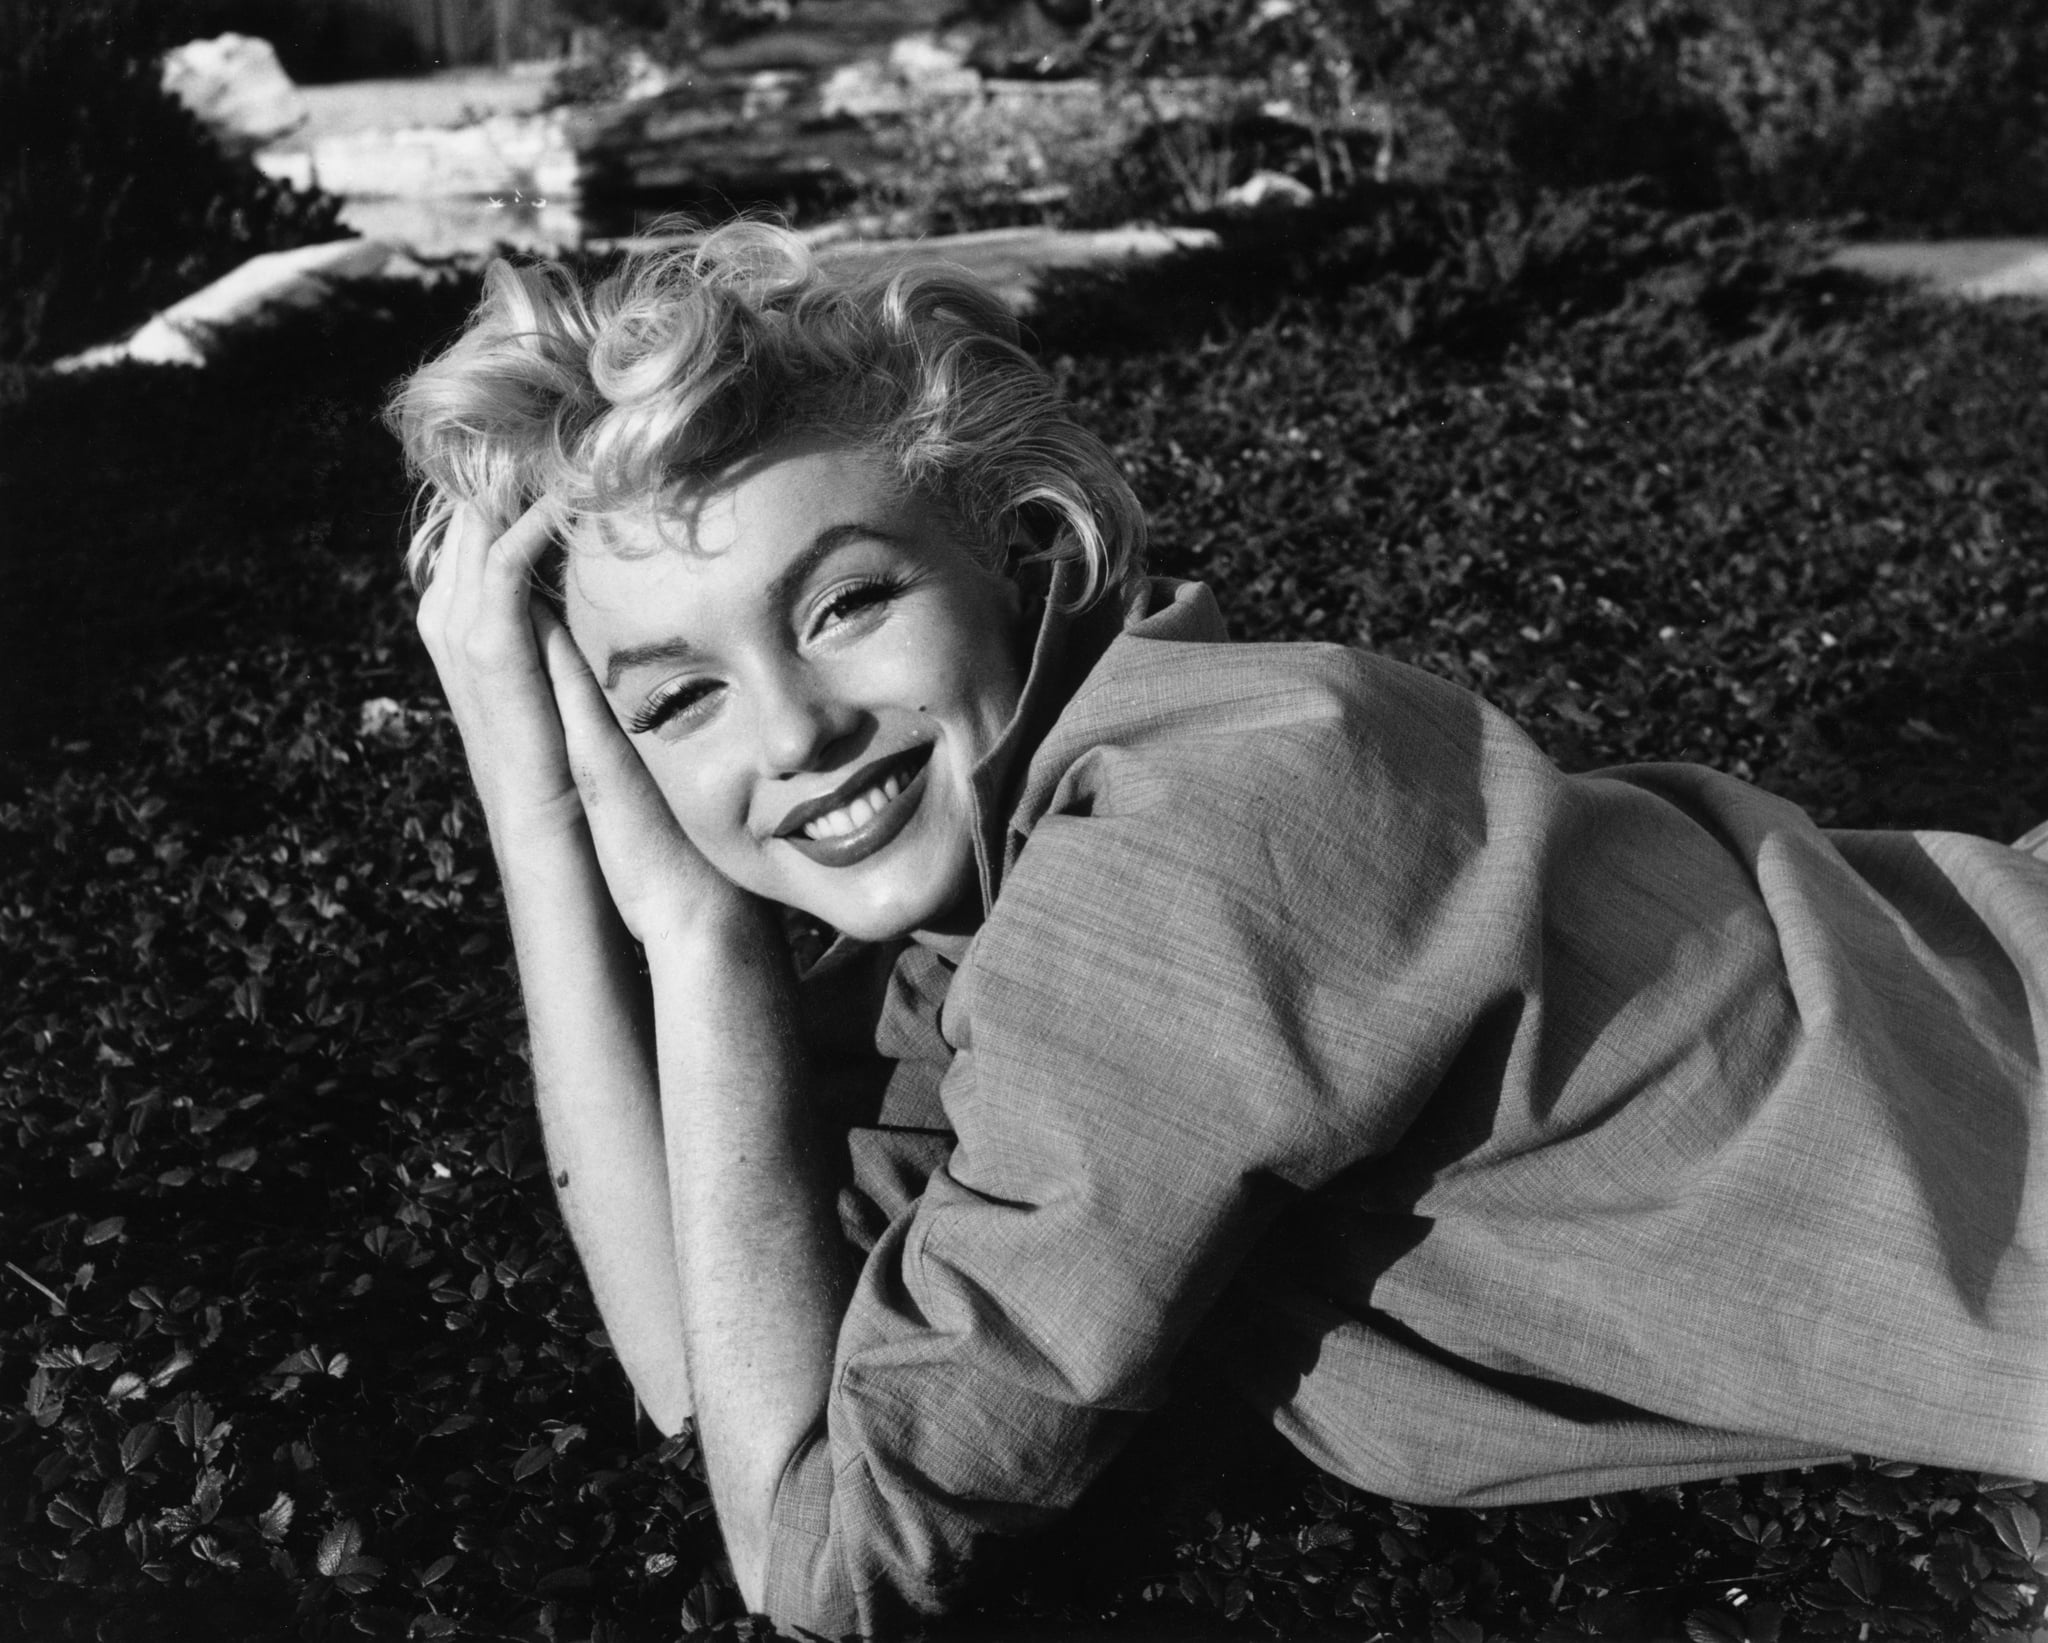 Jfk And Marilyn Monroe Affair Details Popsugar Celebrity